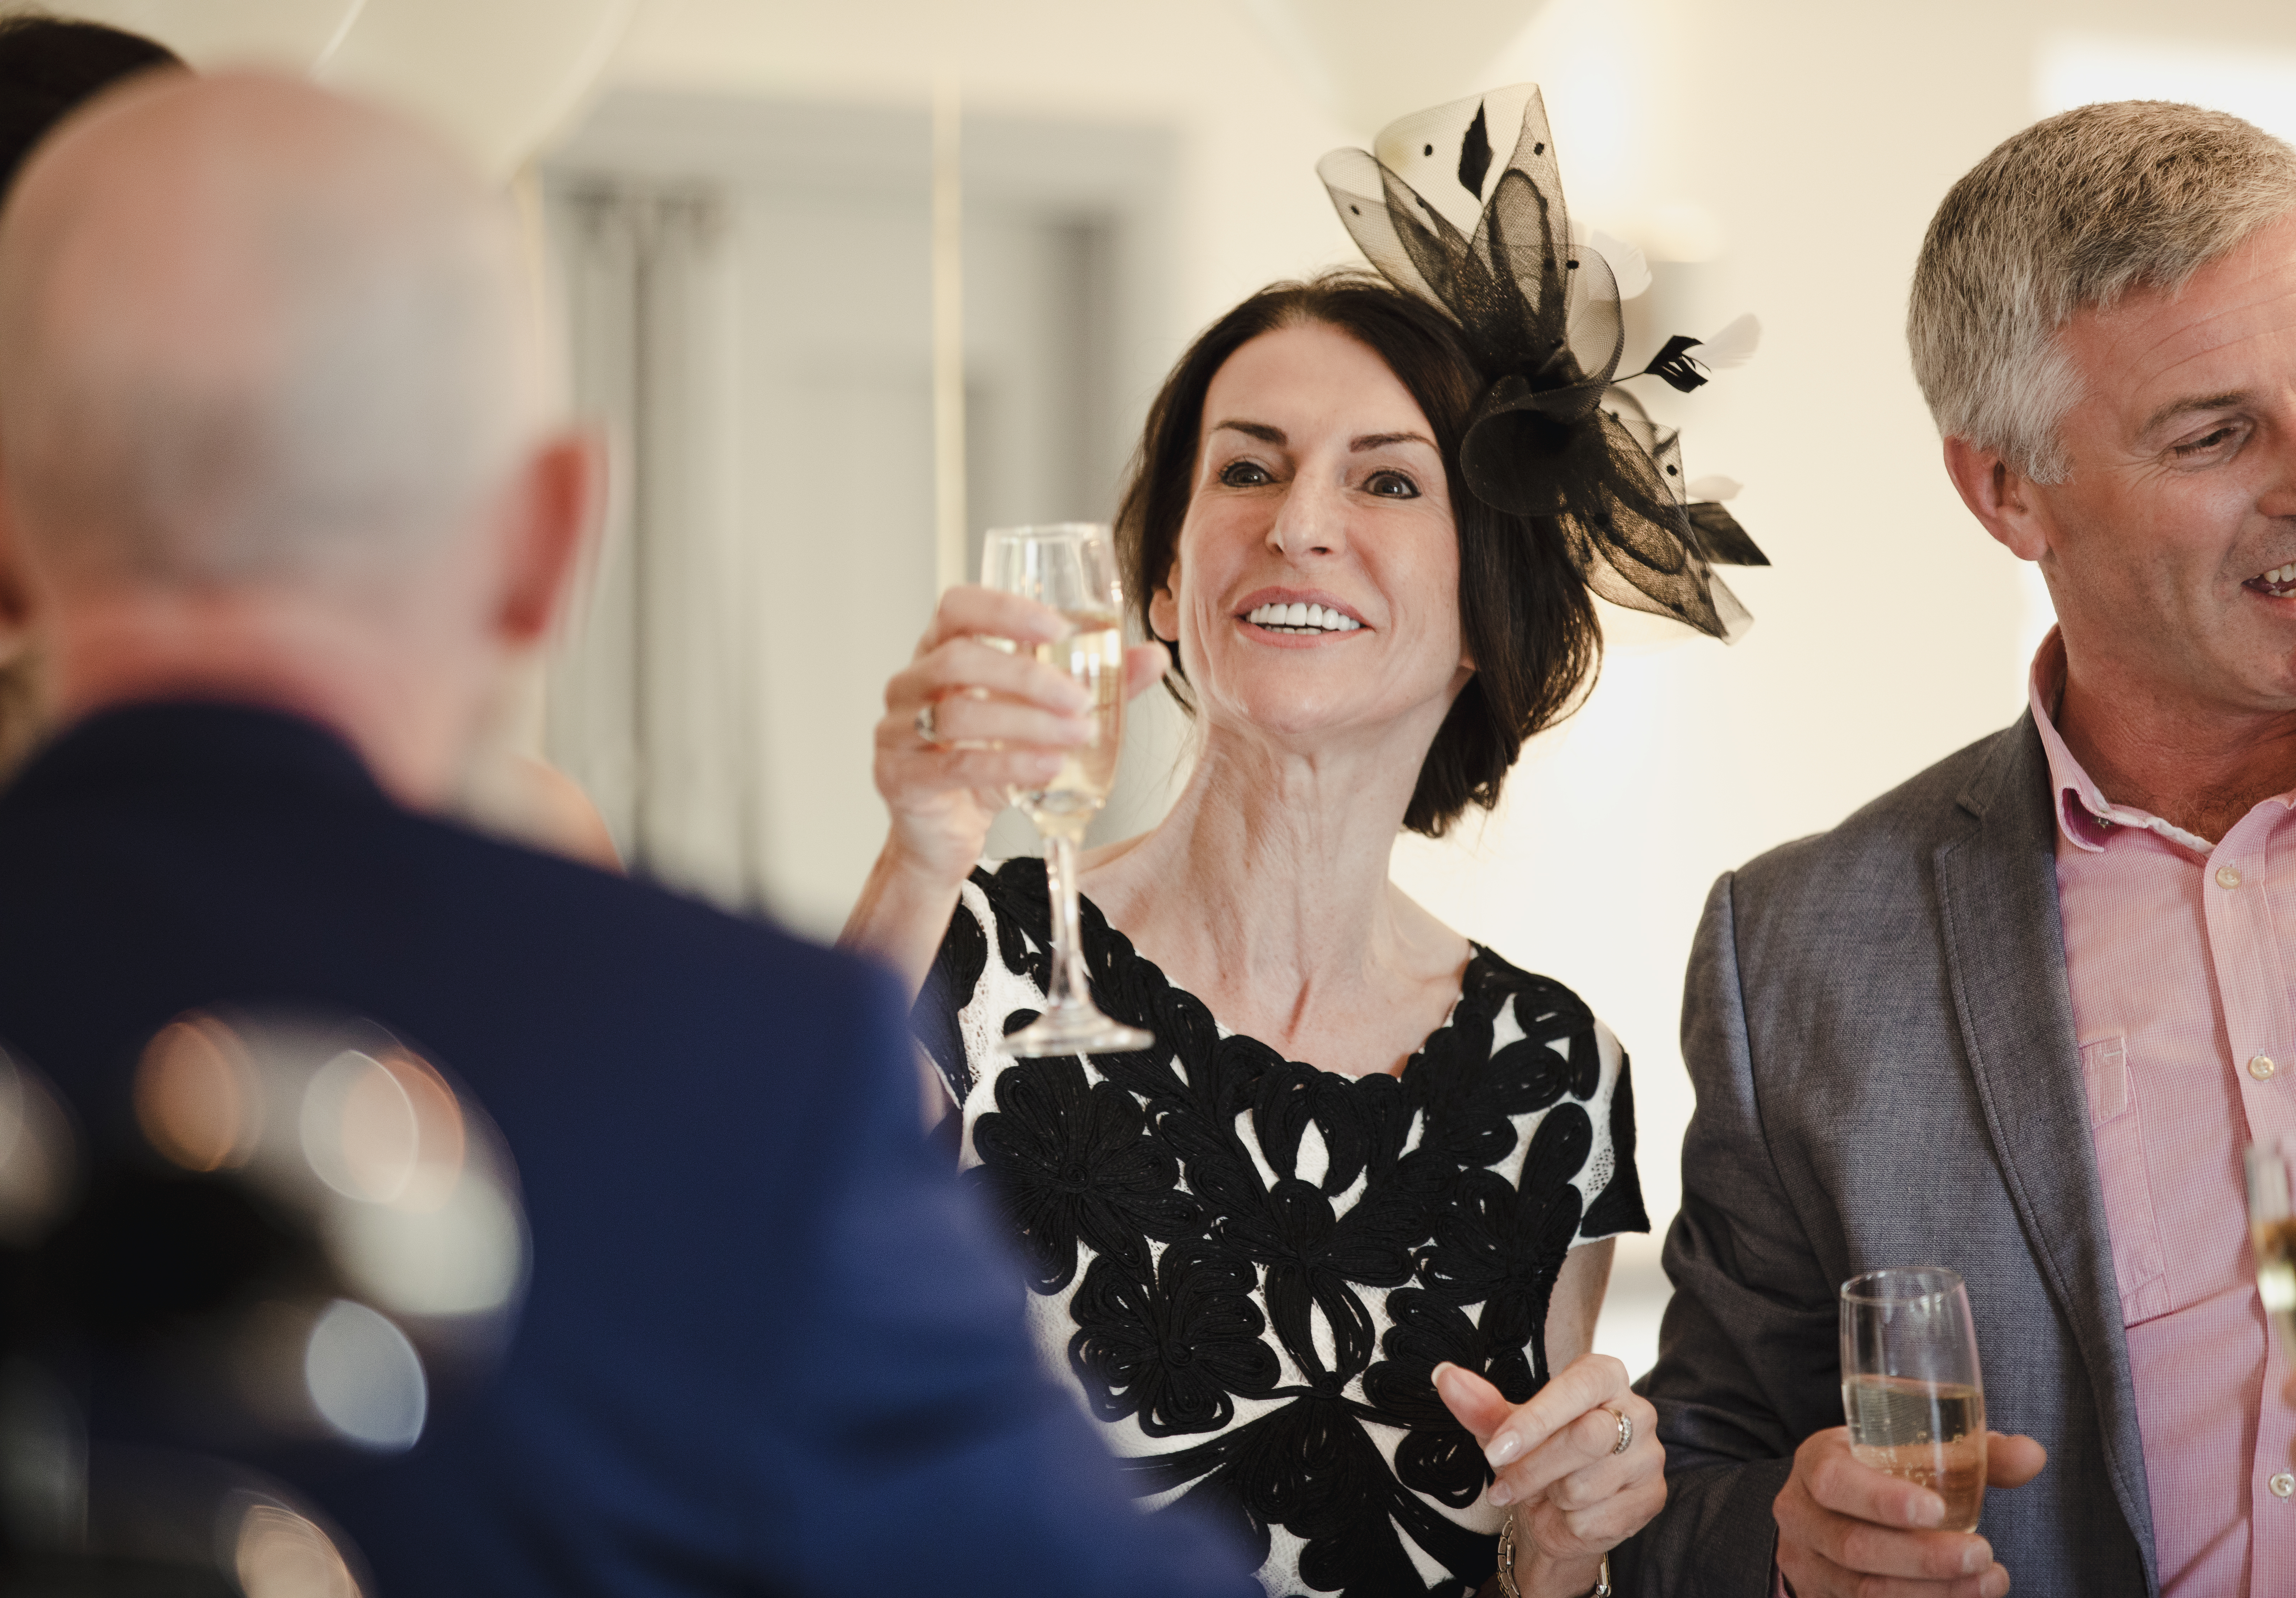 Les parents de la mariée portent un toast à leur fille et leur gendre le jour de leur mariage | Source : Shutterstock